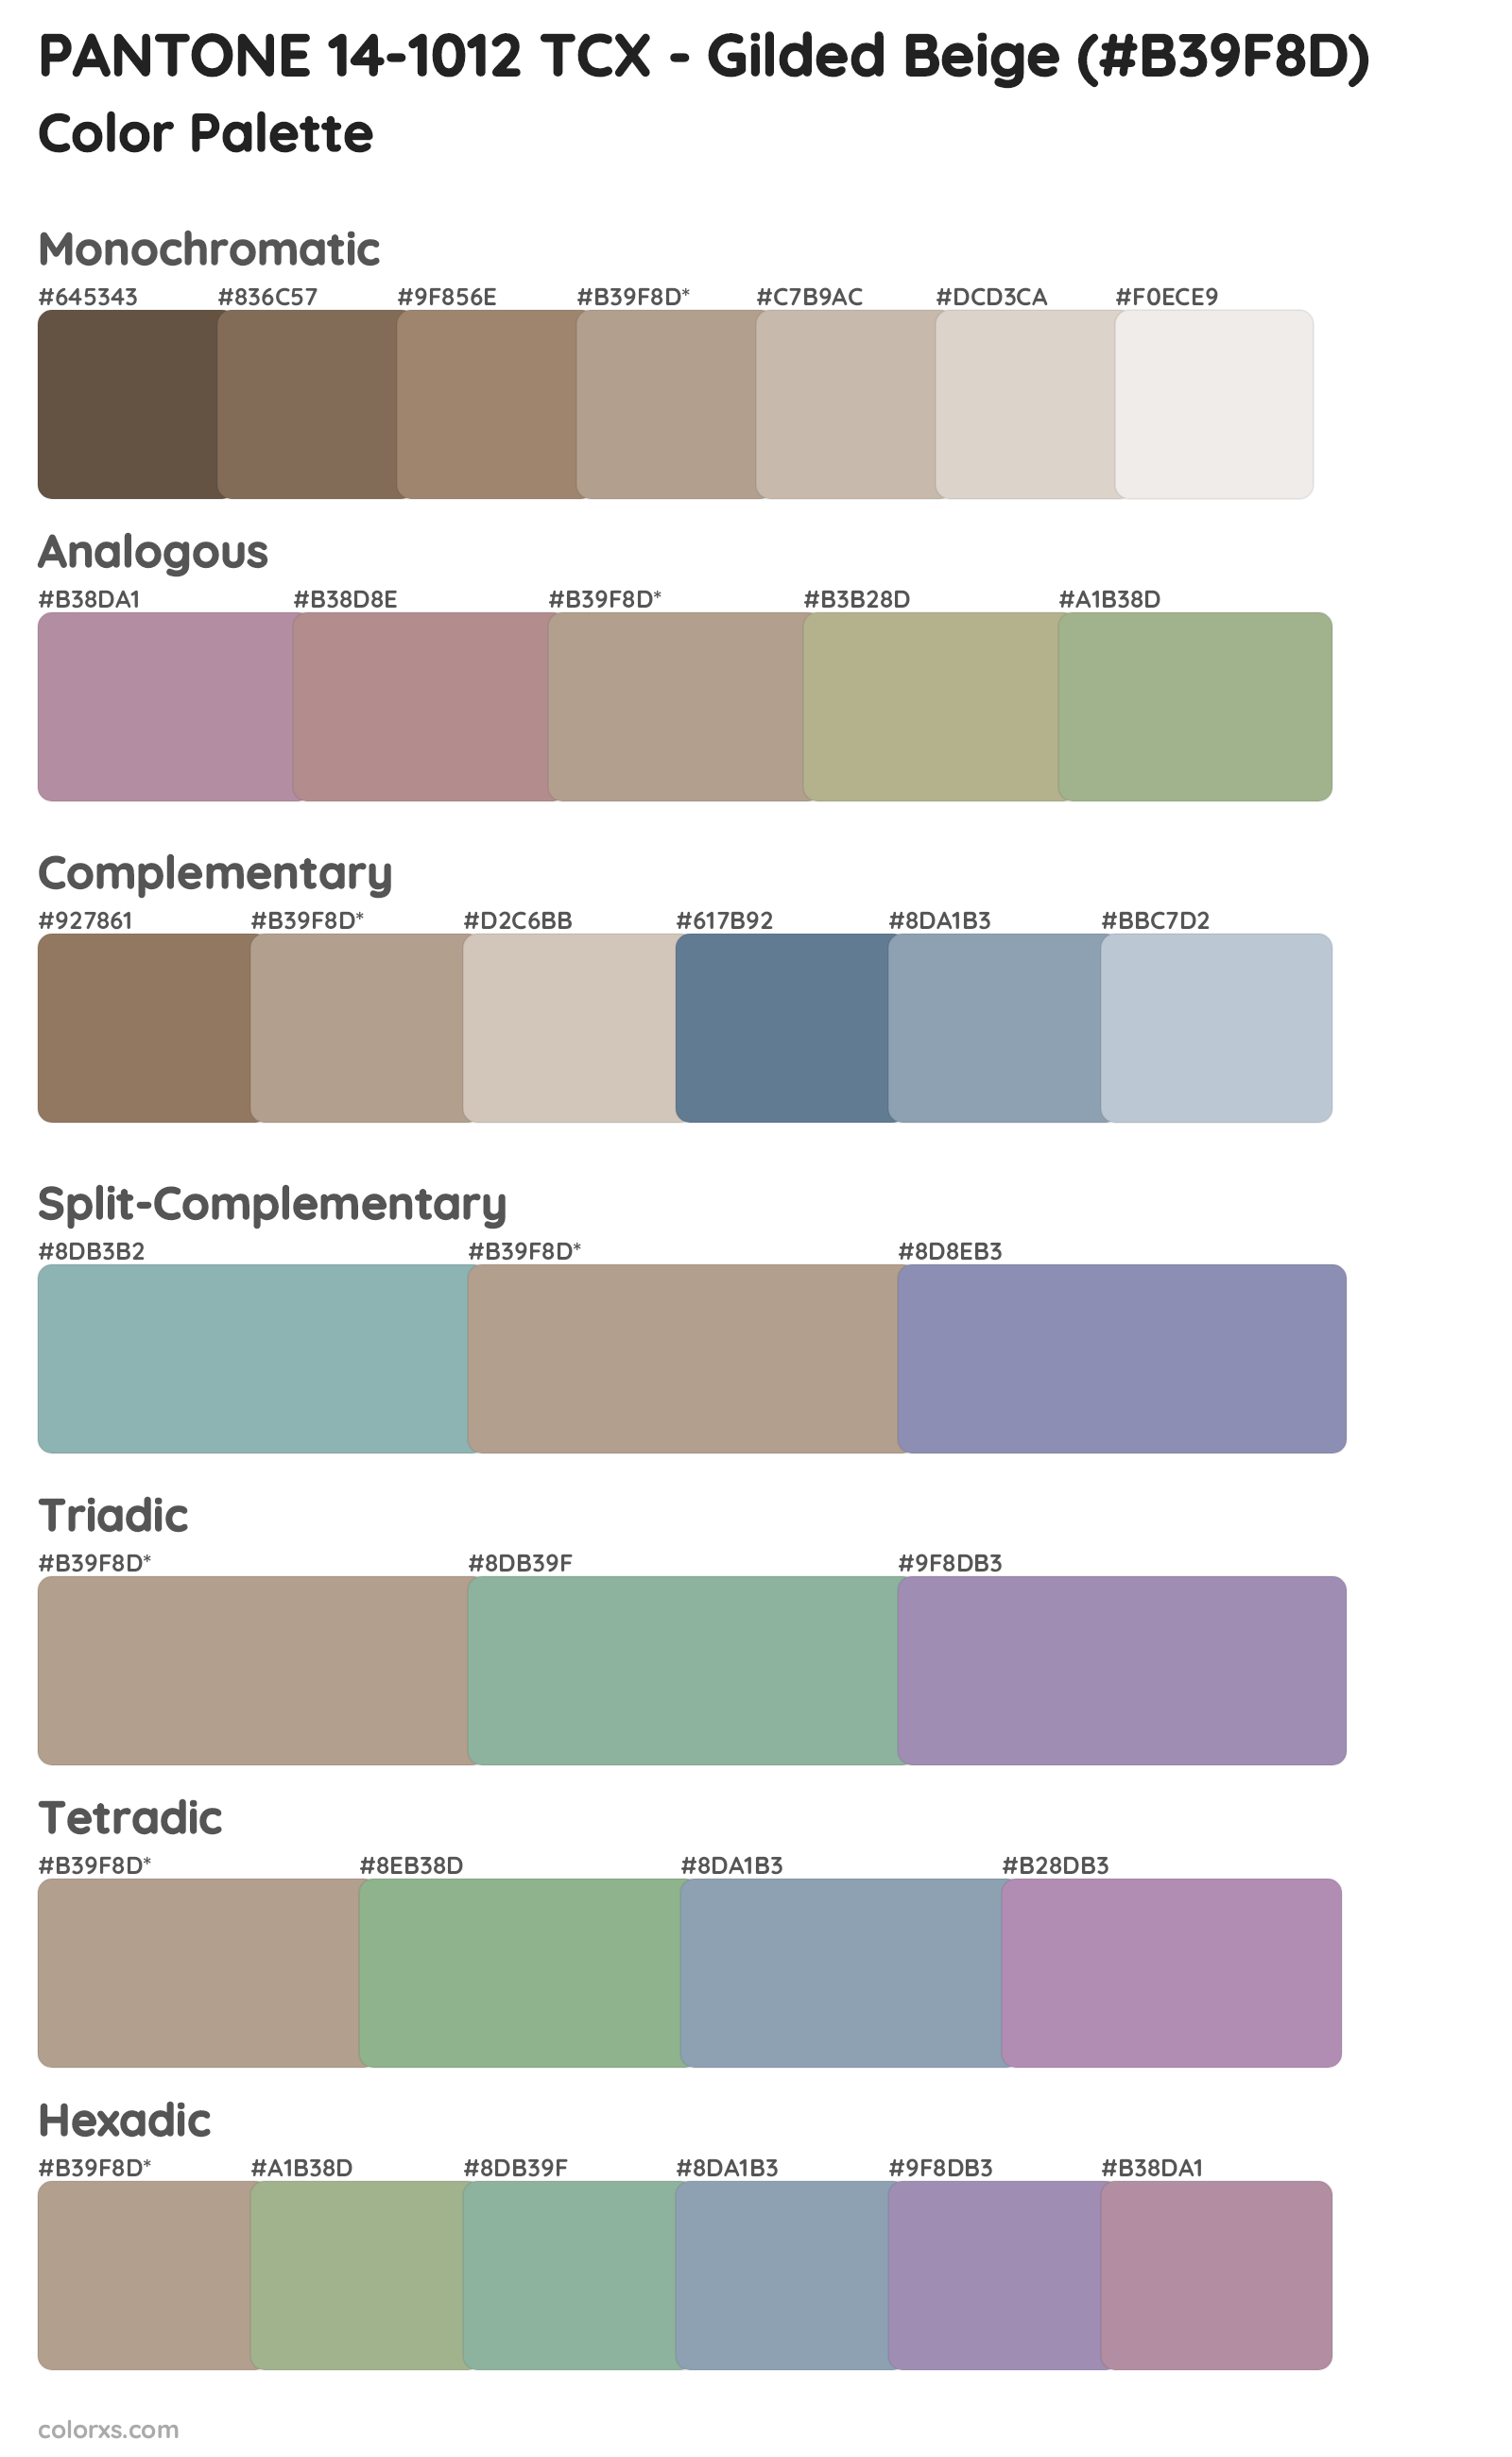 PANTONE 14-1012 TCX - Gilded Beige Color Scheme Palettes